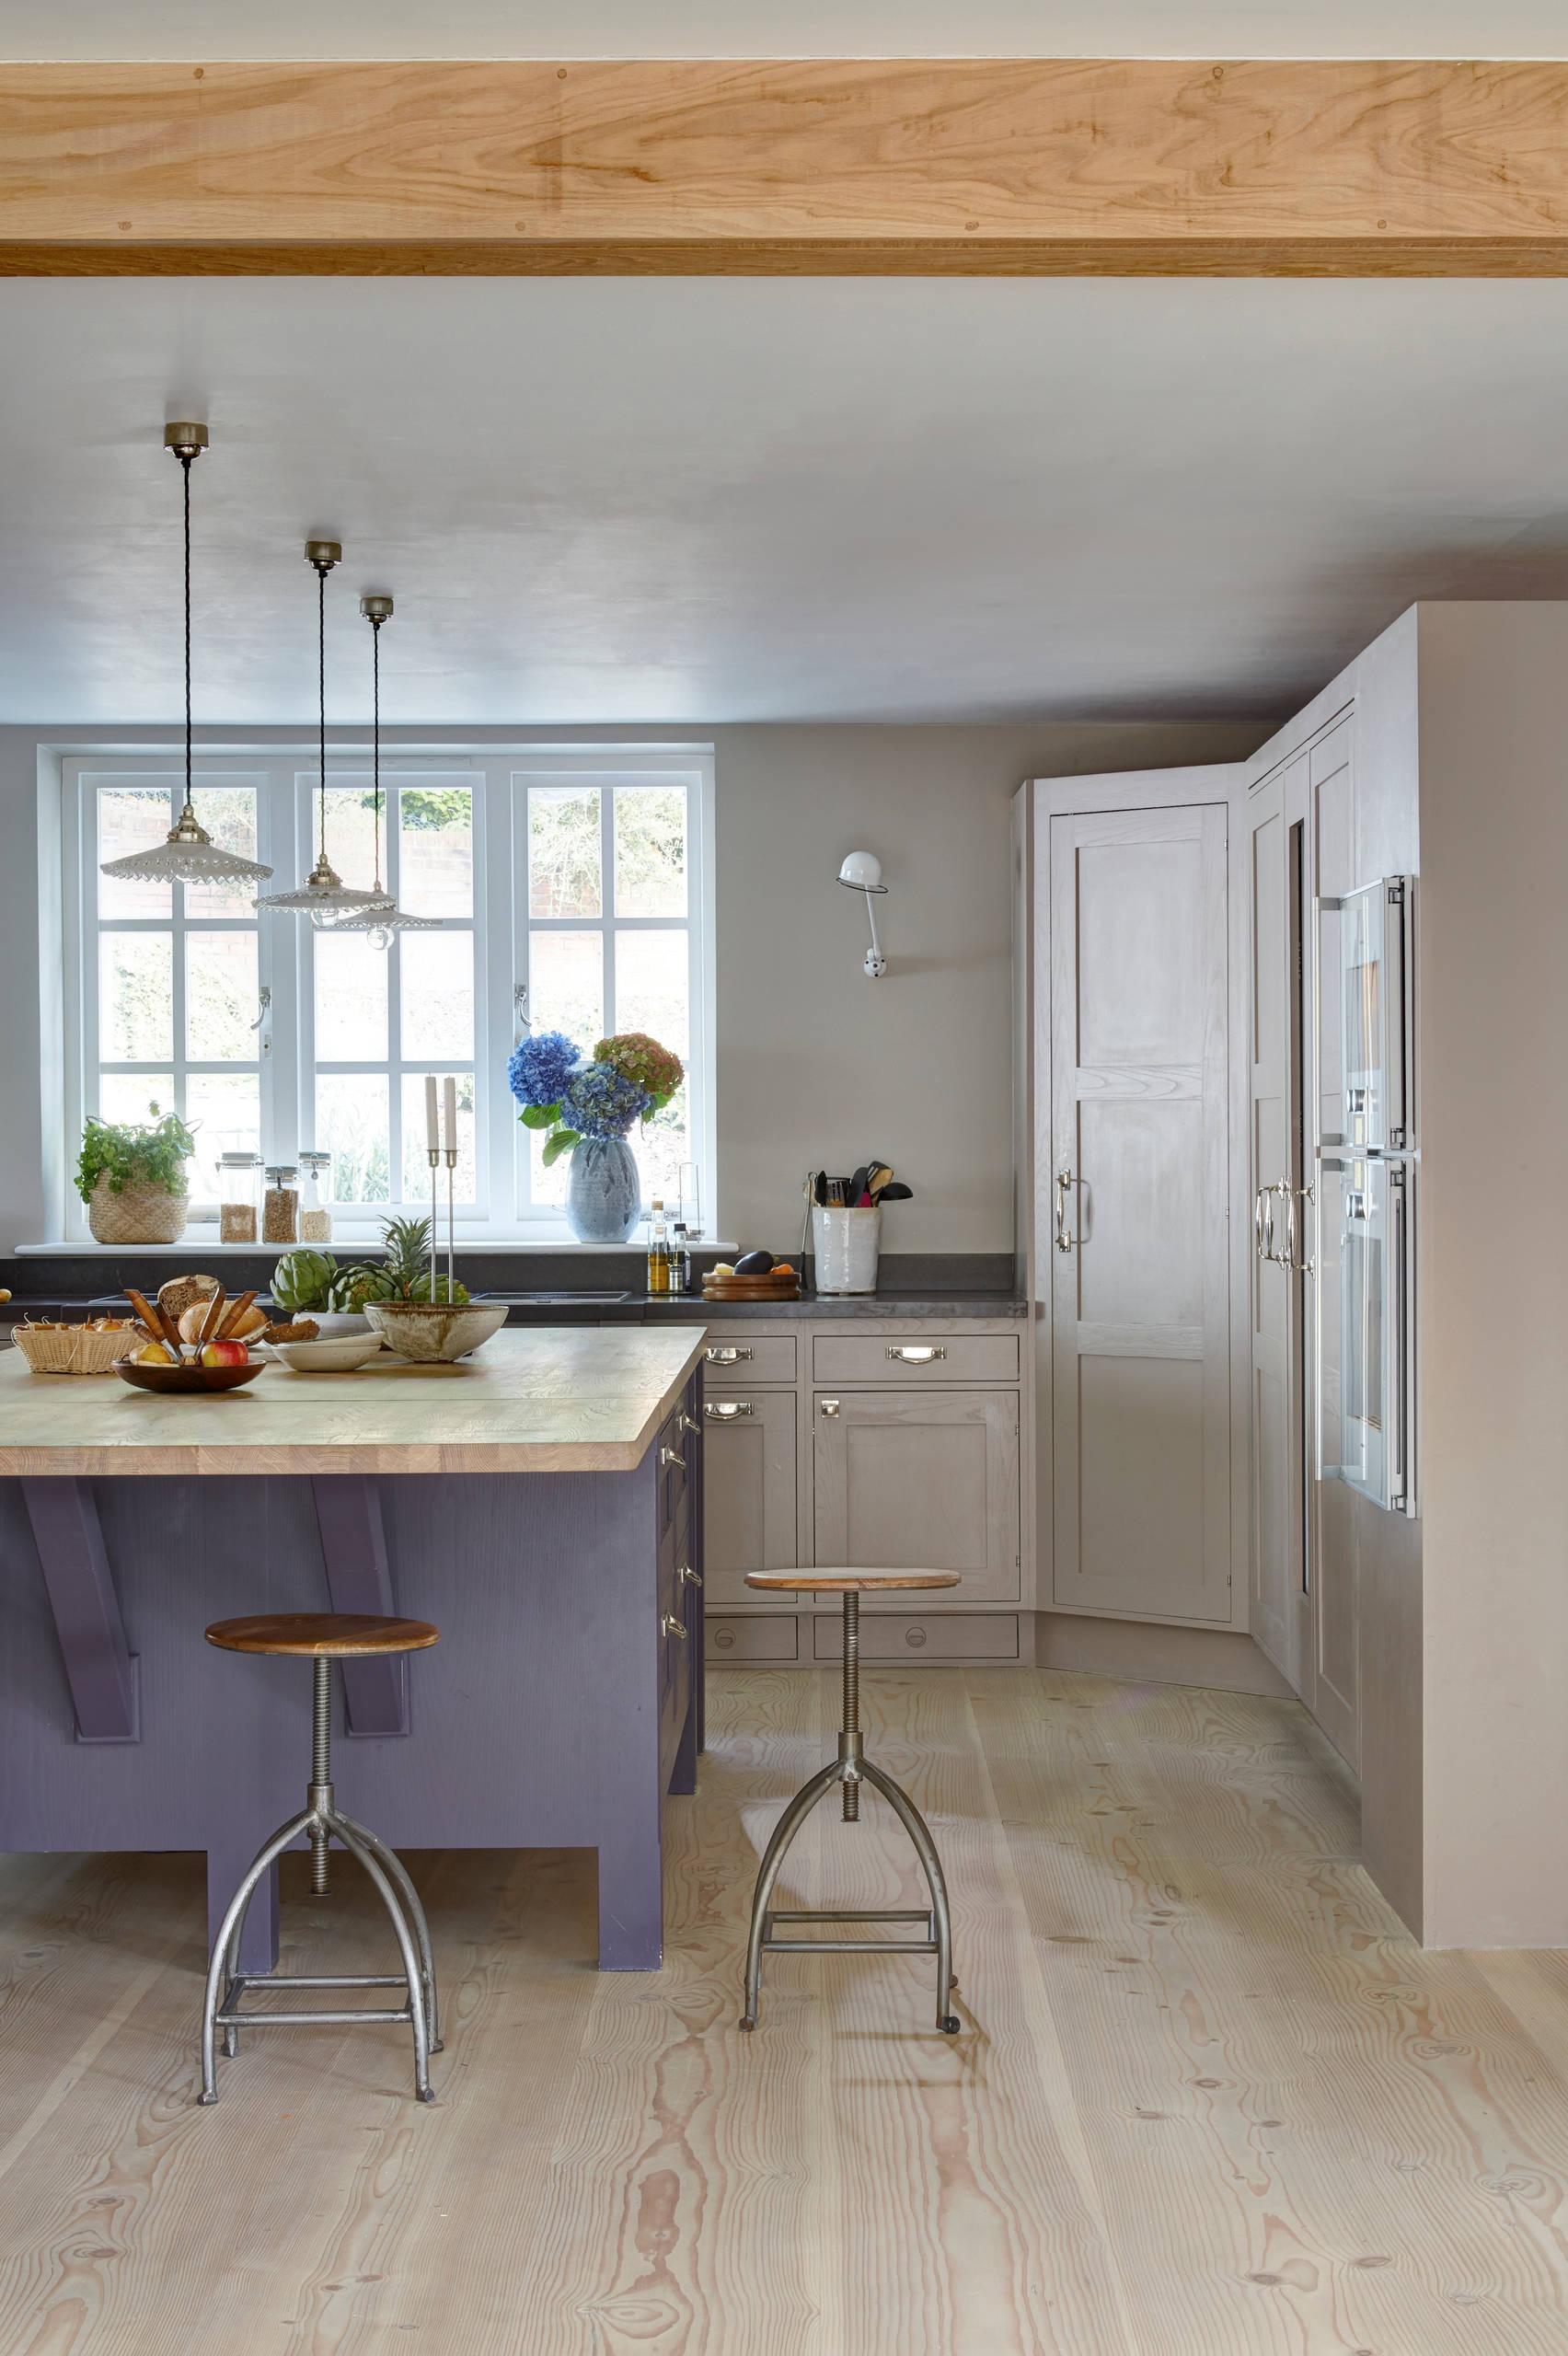 Which Is The Best Corner Storage, Best Idea Kitchen Cabinets Surrey Uk